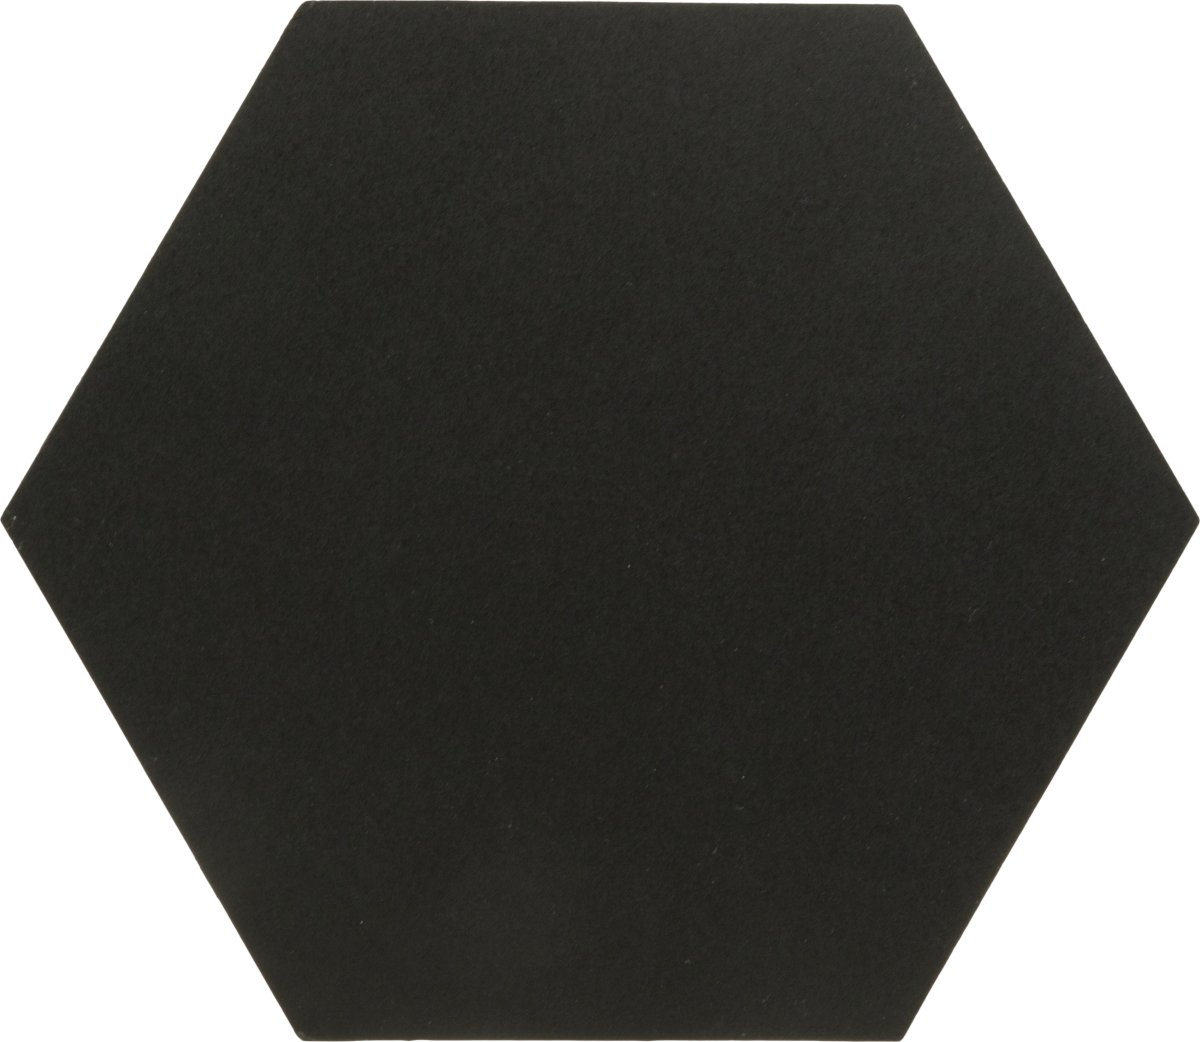 Securit Hexagon Griffel- och korktavla, 7 st